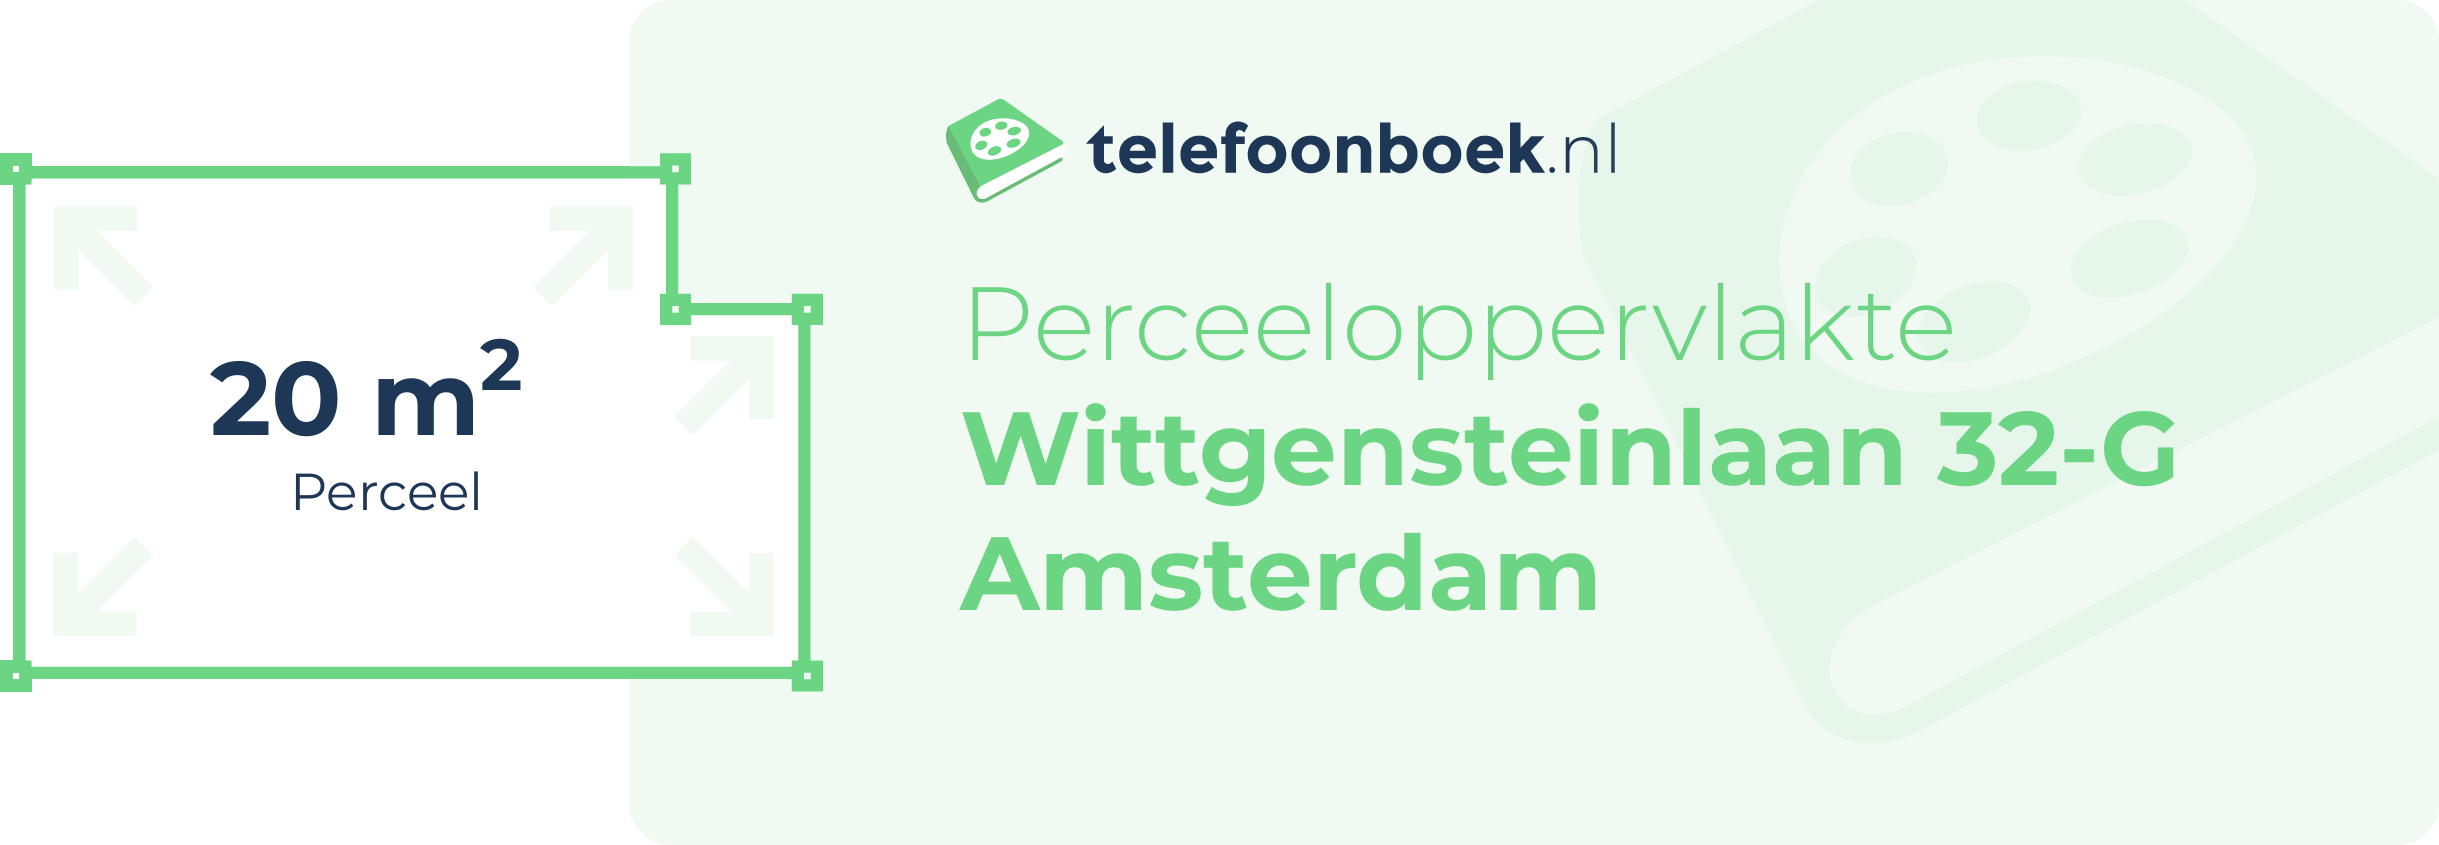 Perceeloppervlakte Wittgensteinlaan 32-G Amsterdam